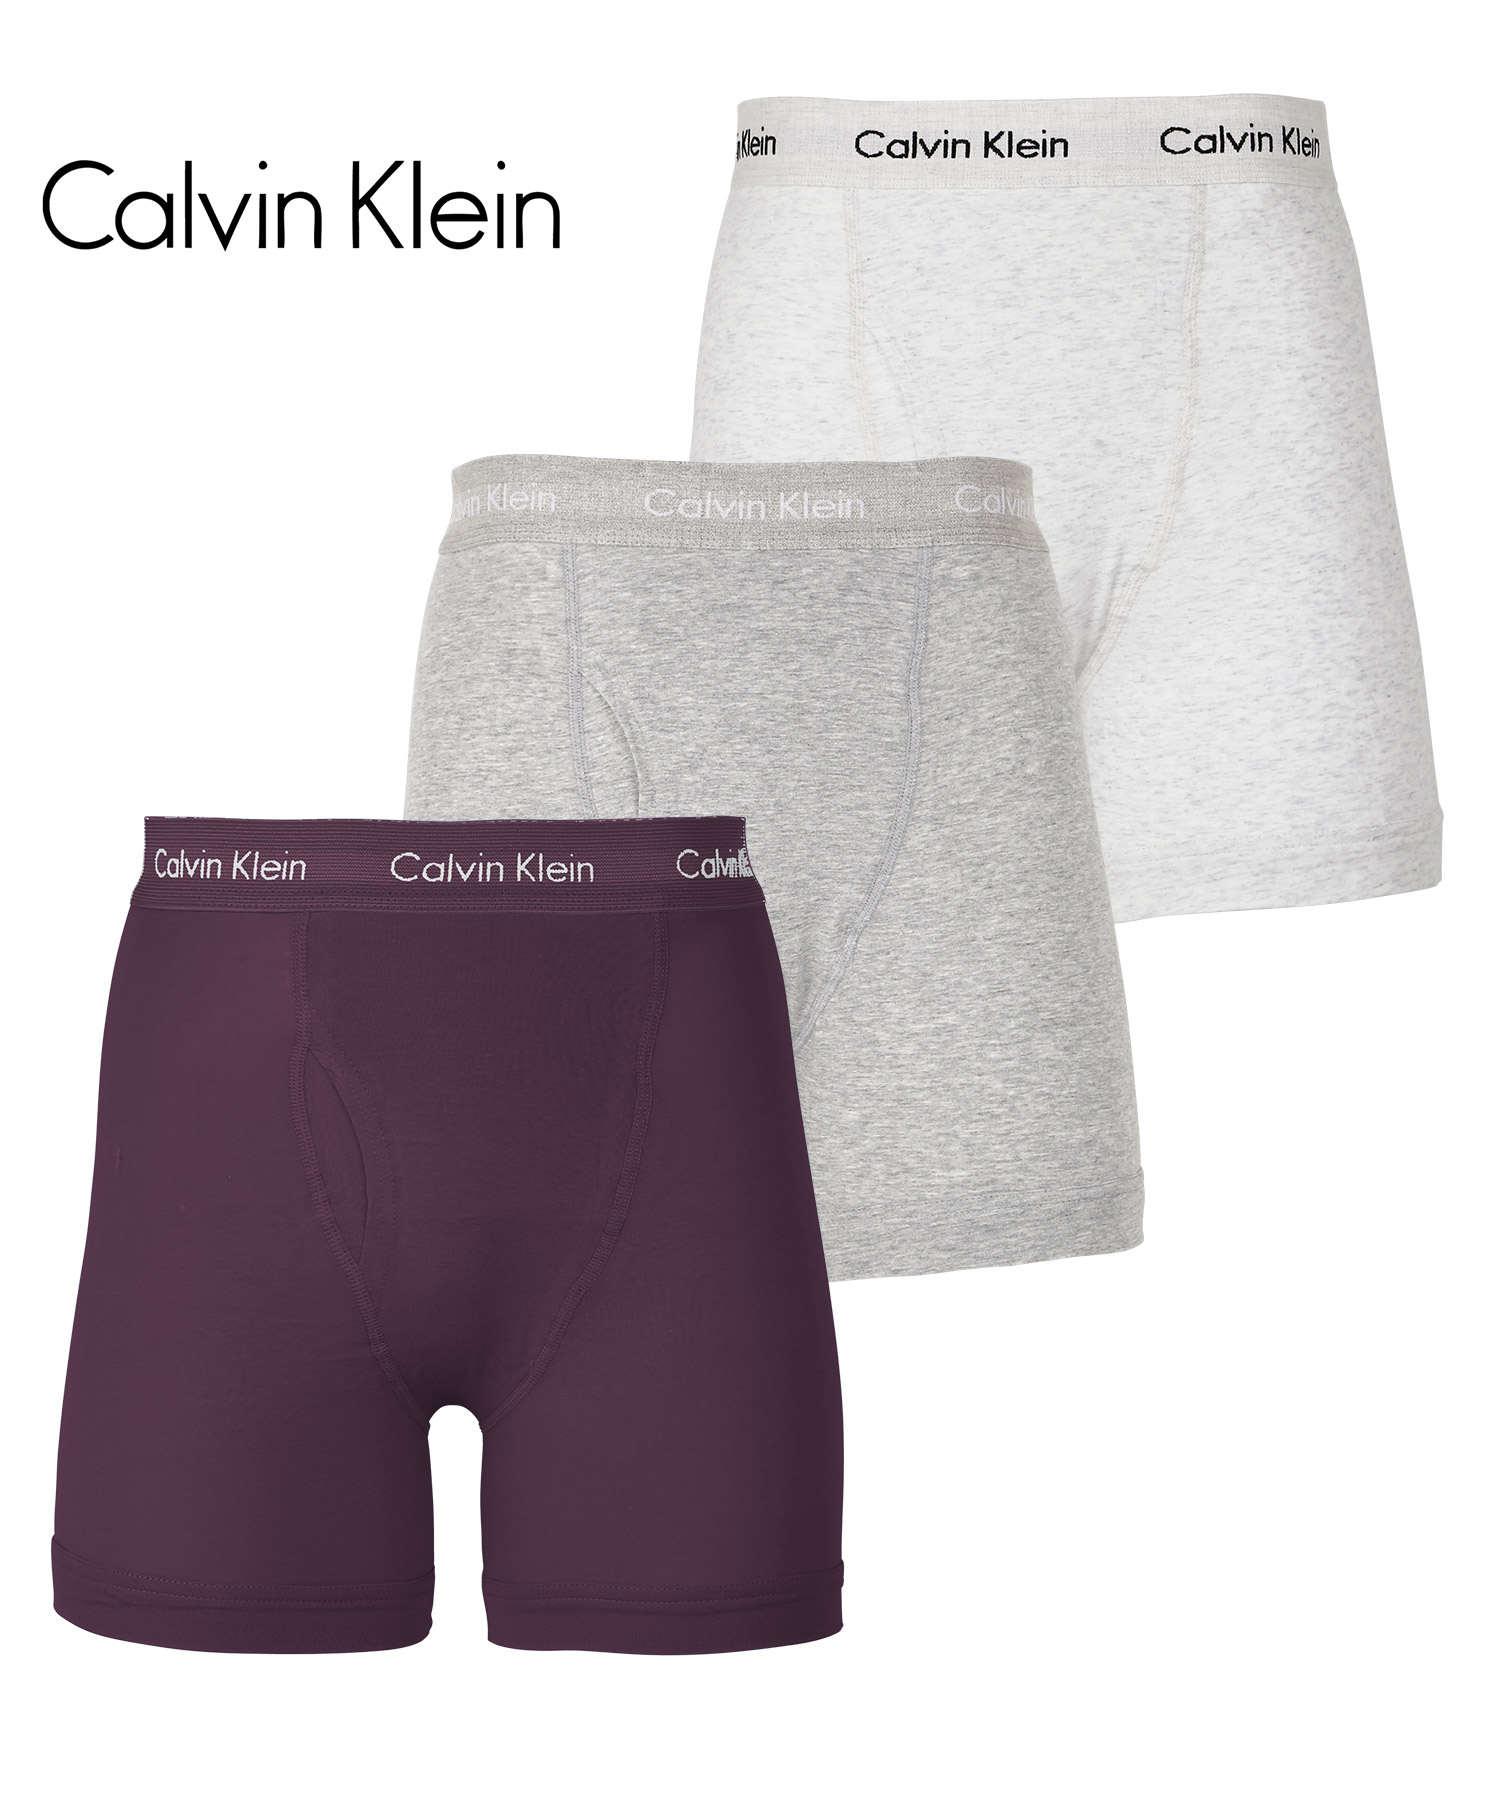 カルバンクライン ボクサーパンツ 3枚セット Calvin Klein ロング メンズ 下着 アンダーウェア 紳士 綿 長め 前開き ブランド 高級  ハイブランド ギフト 父の日